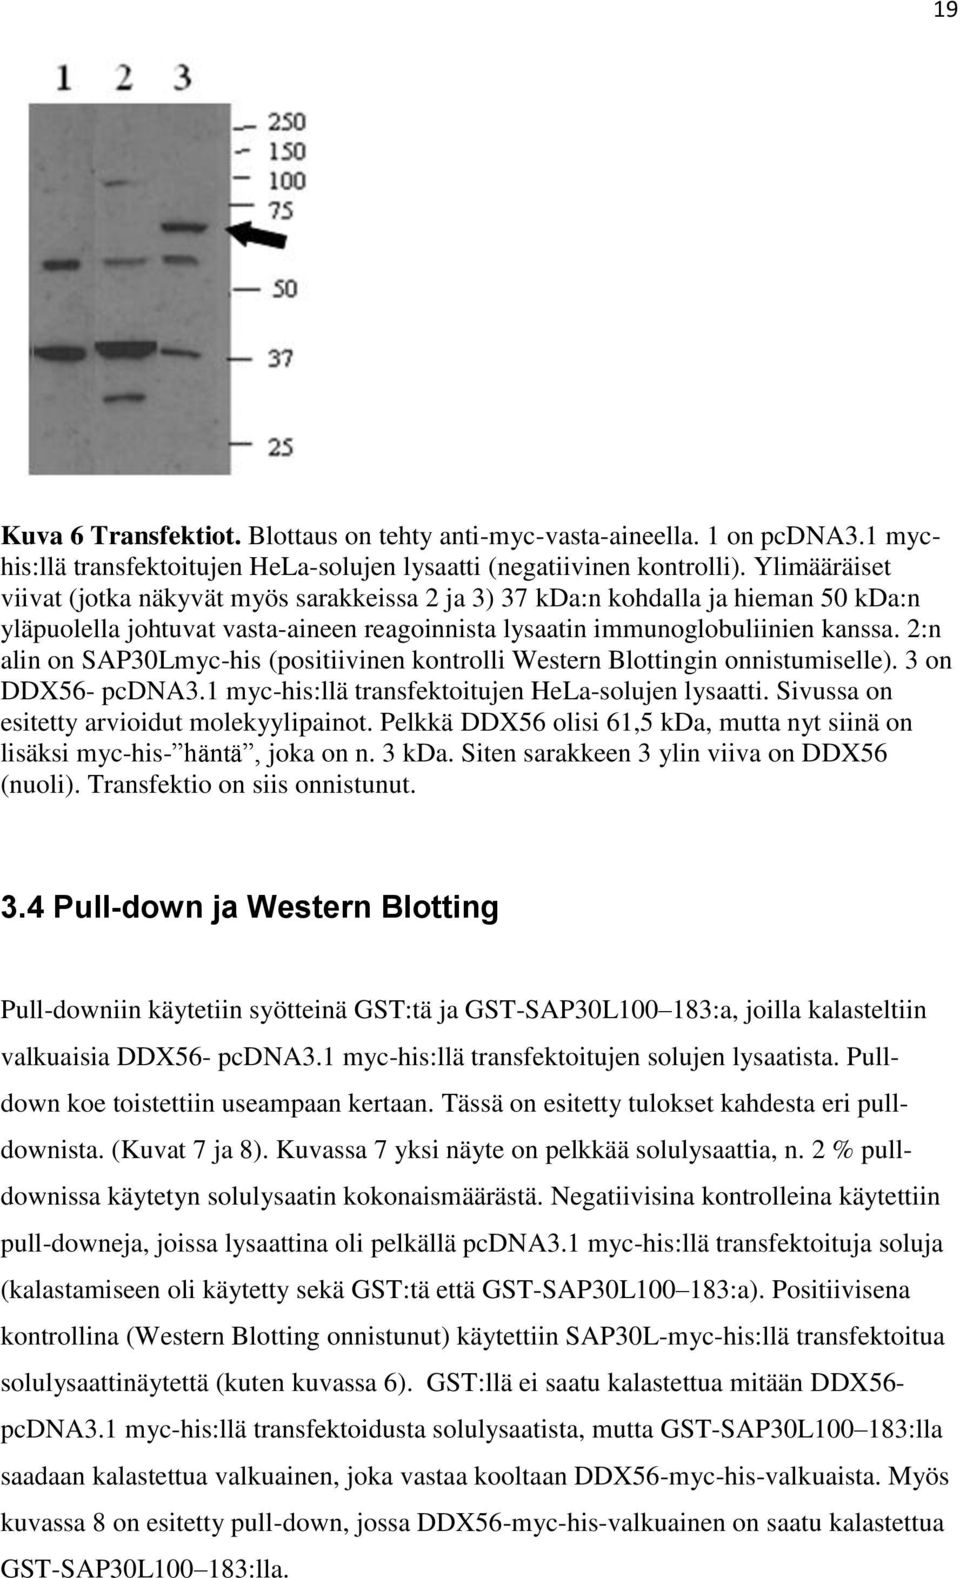 2:n alin on SAP30Lmyc-his (positiivinen kontrolli Western Blottingin onnistumiselle). 3 on DDX56- pcdna3.1 myc-his:llä transfektoitujen HeLa-solujen lysaatti.